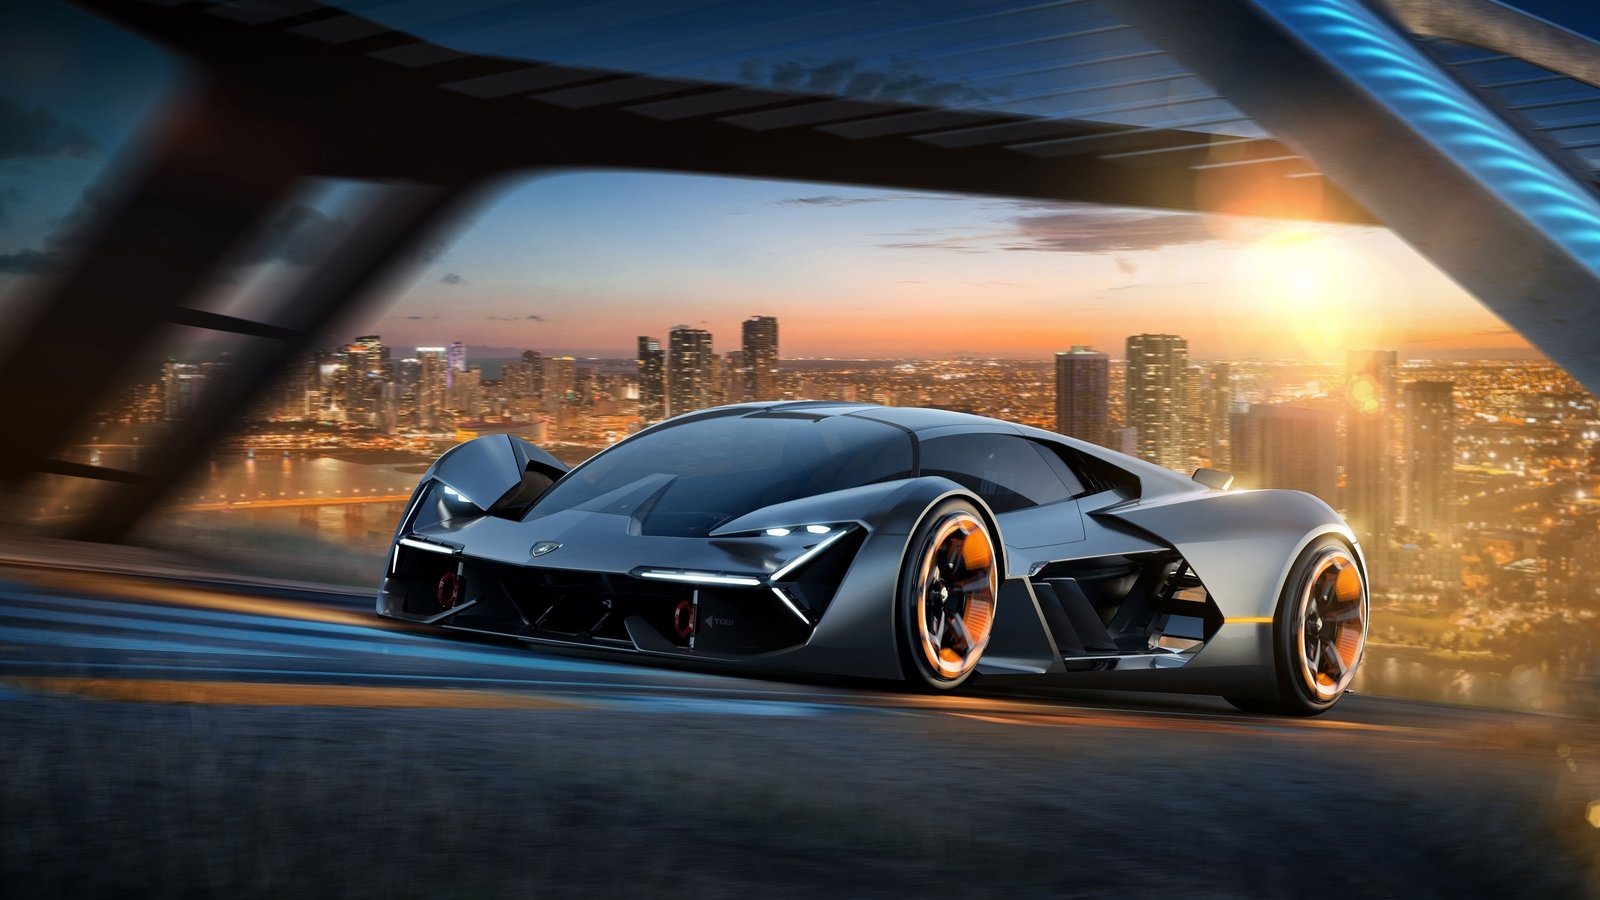 Lamborghini 2019 Detailing Orlando